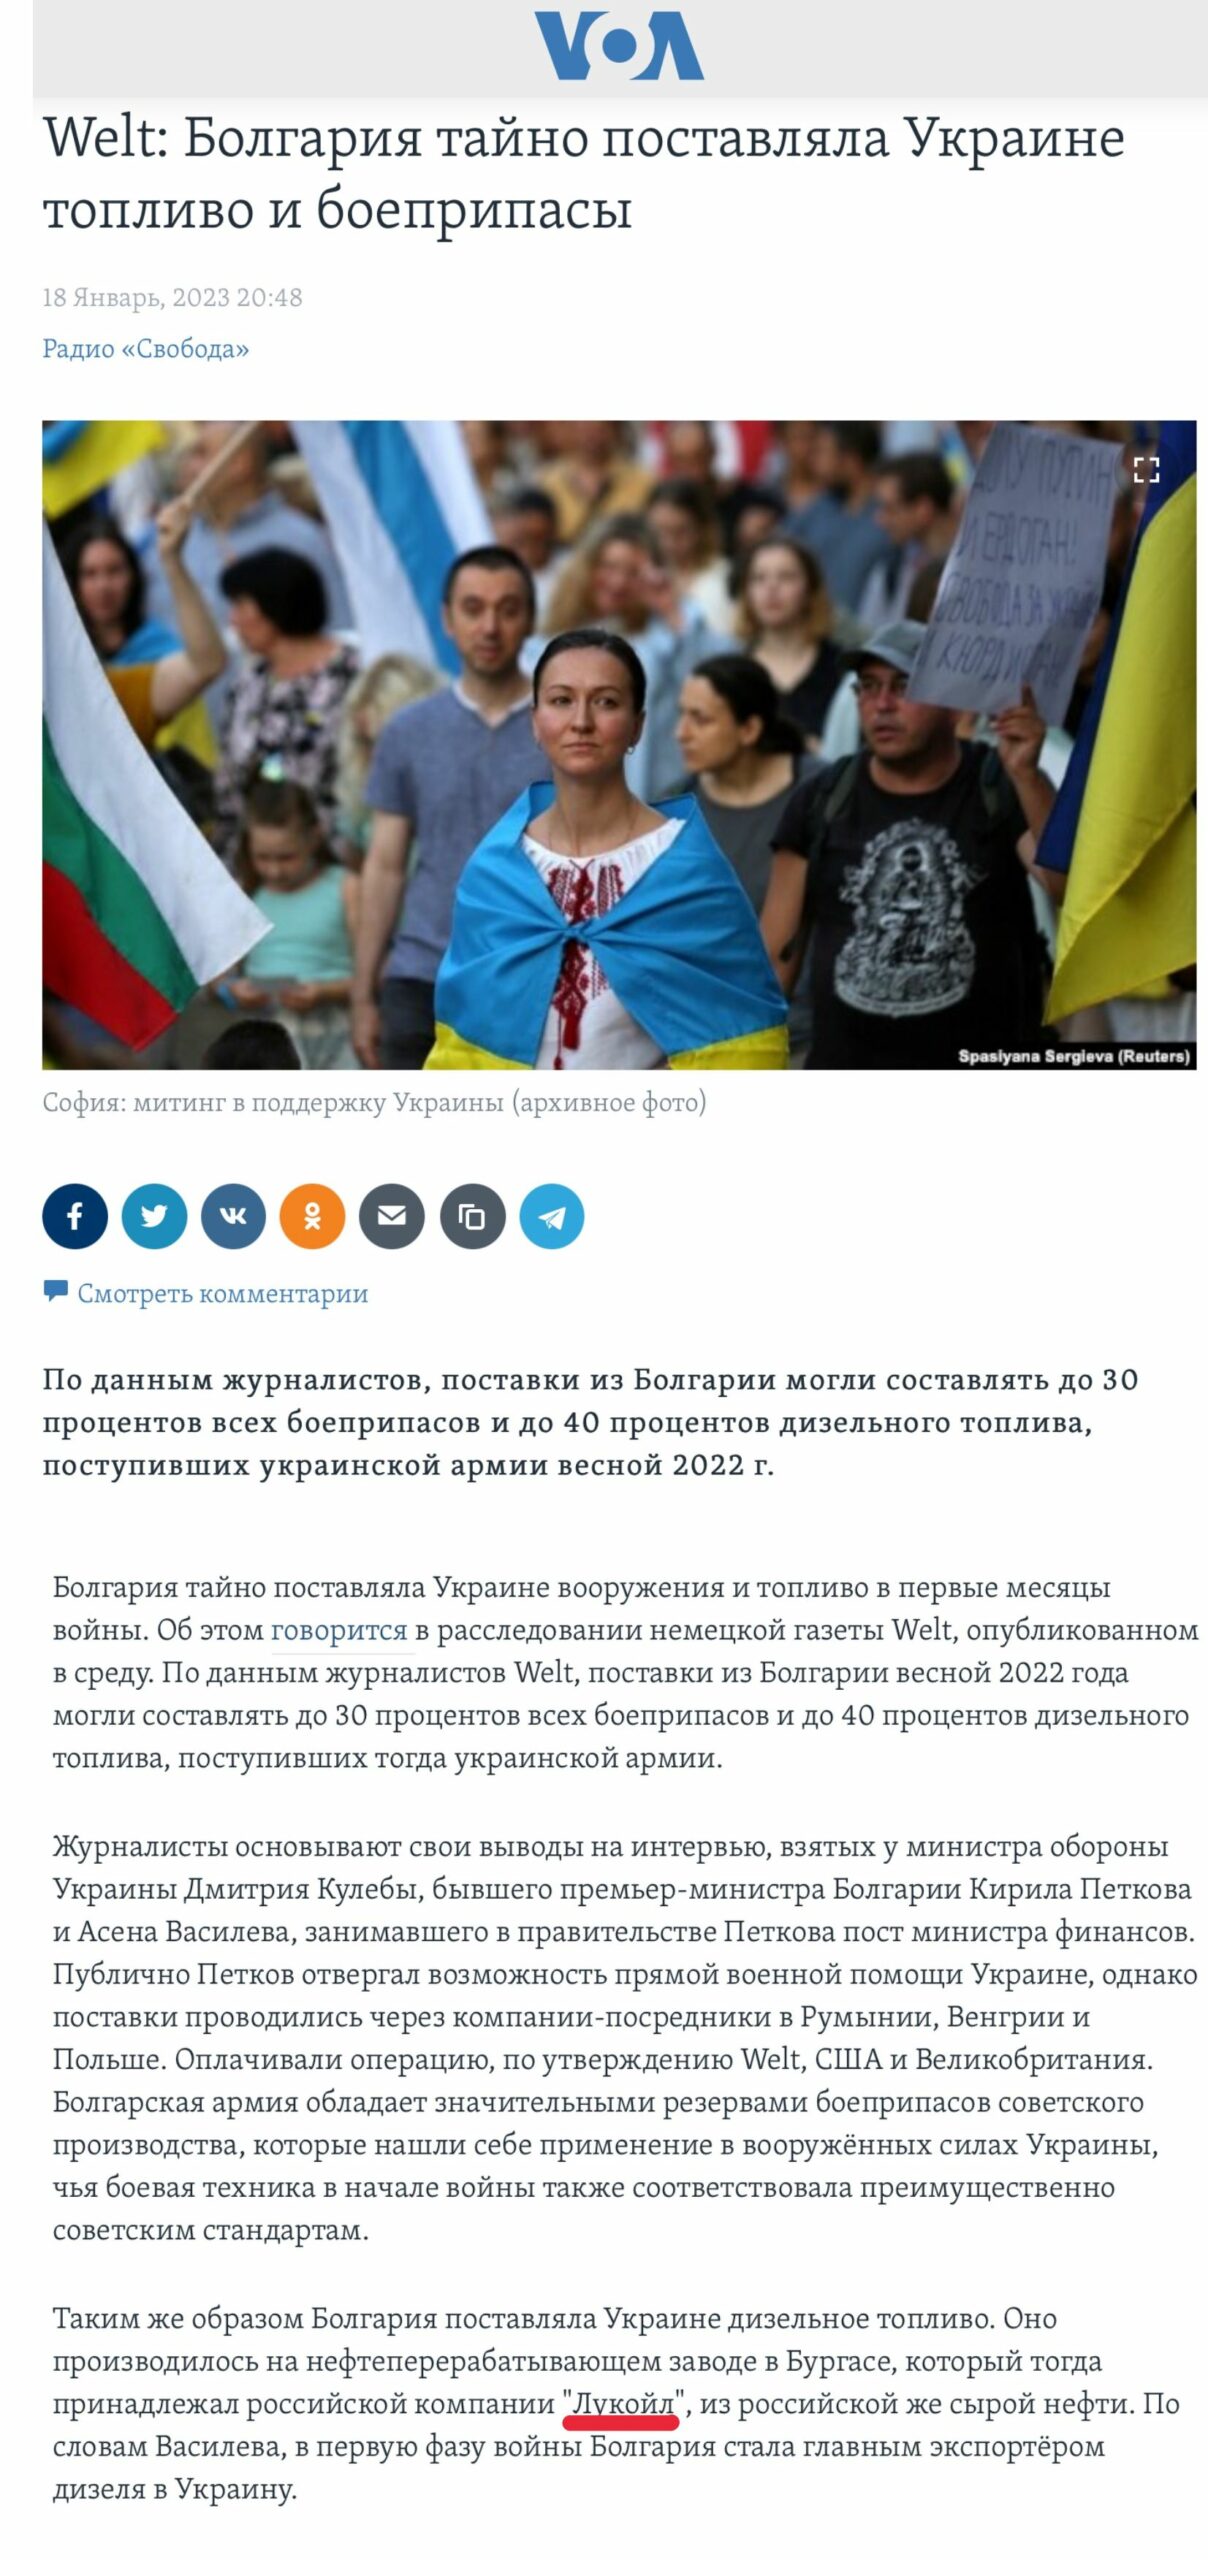 «Лукойл» тайно поставлял дизельное топливо на Украину